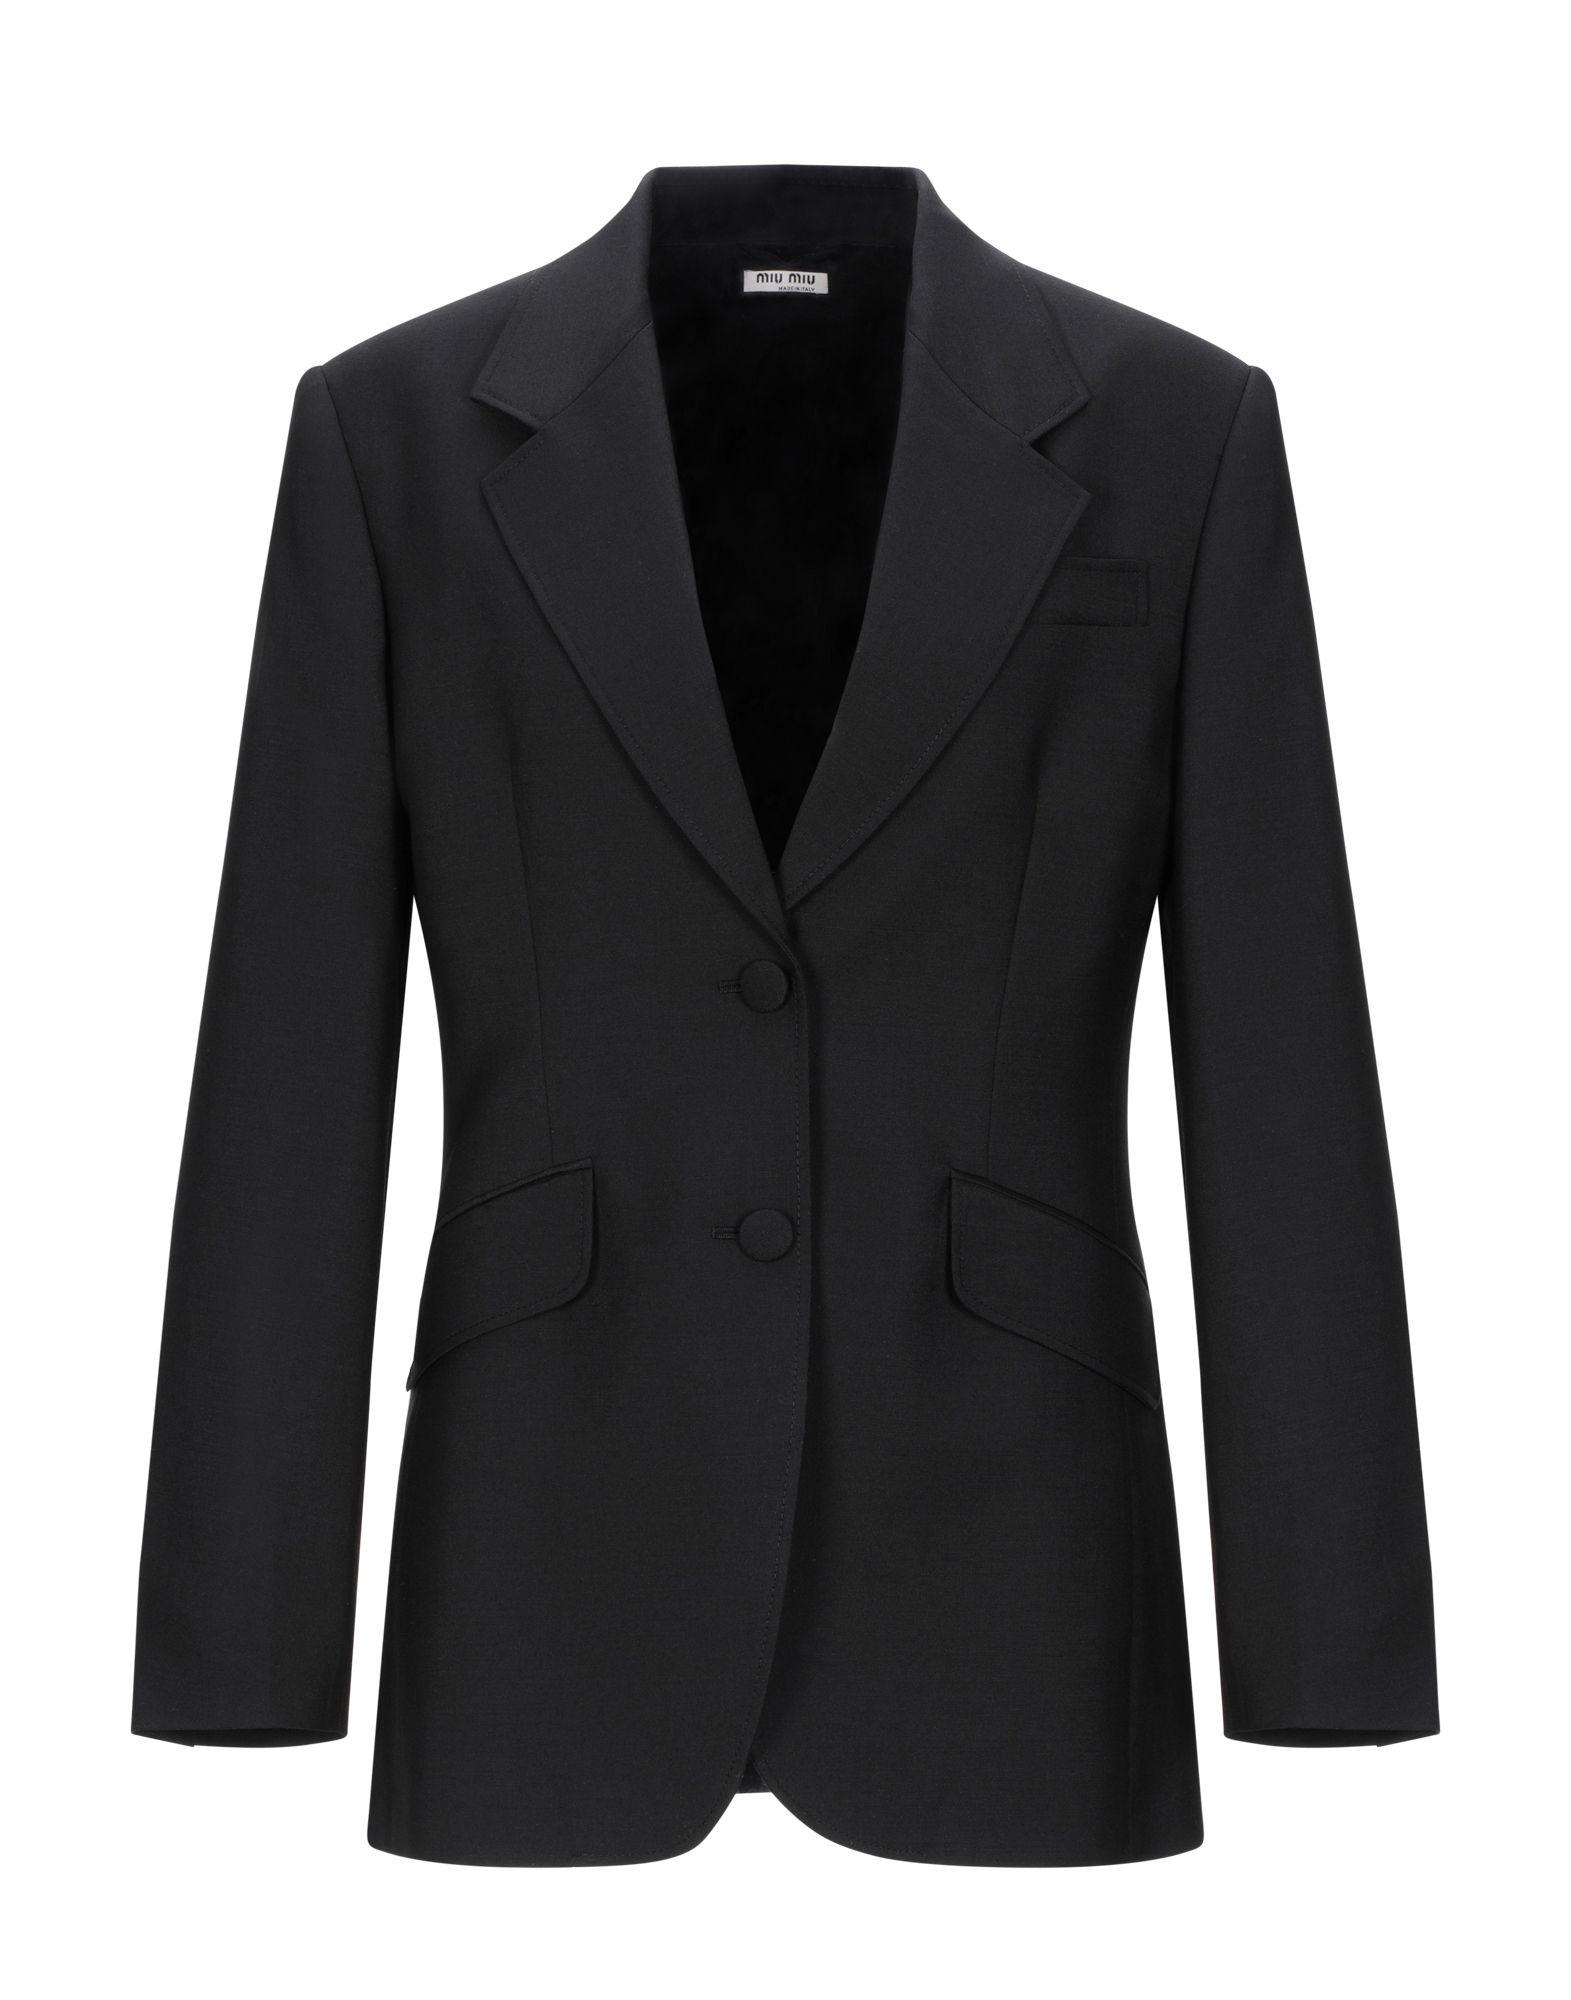 Miu Miu Wool Suit Jacket in Black - Lyst